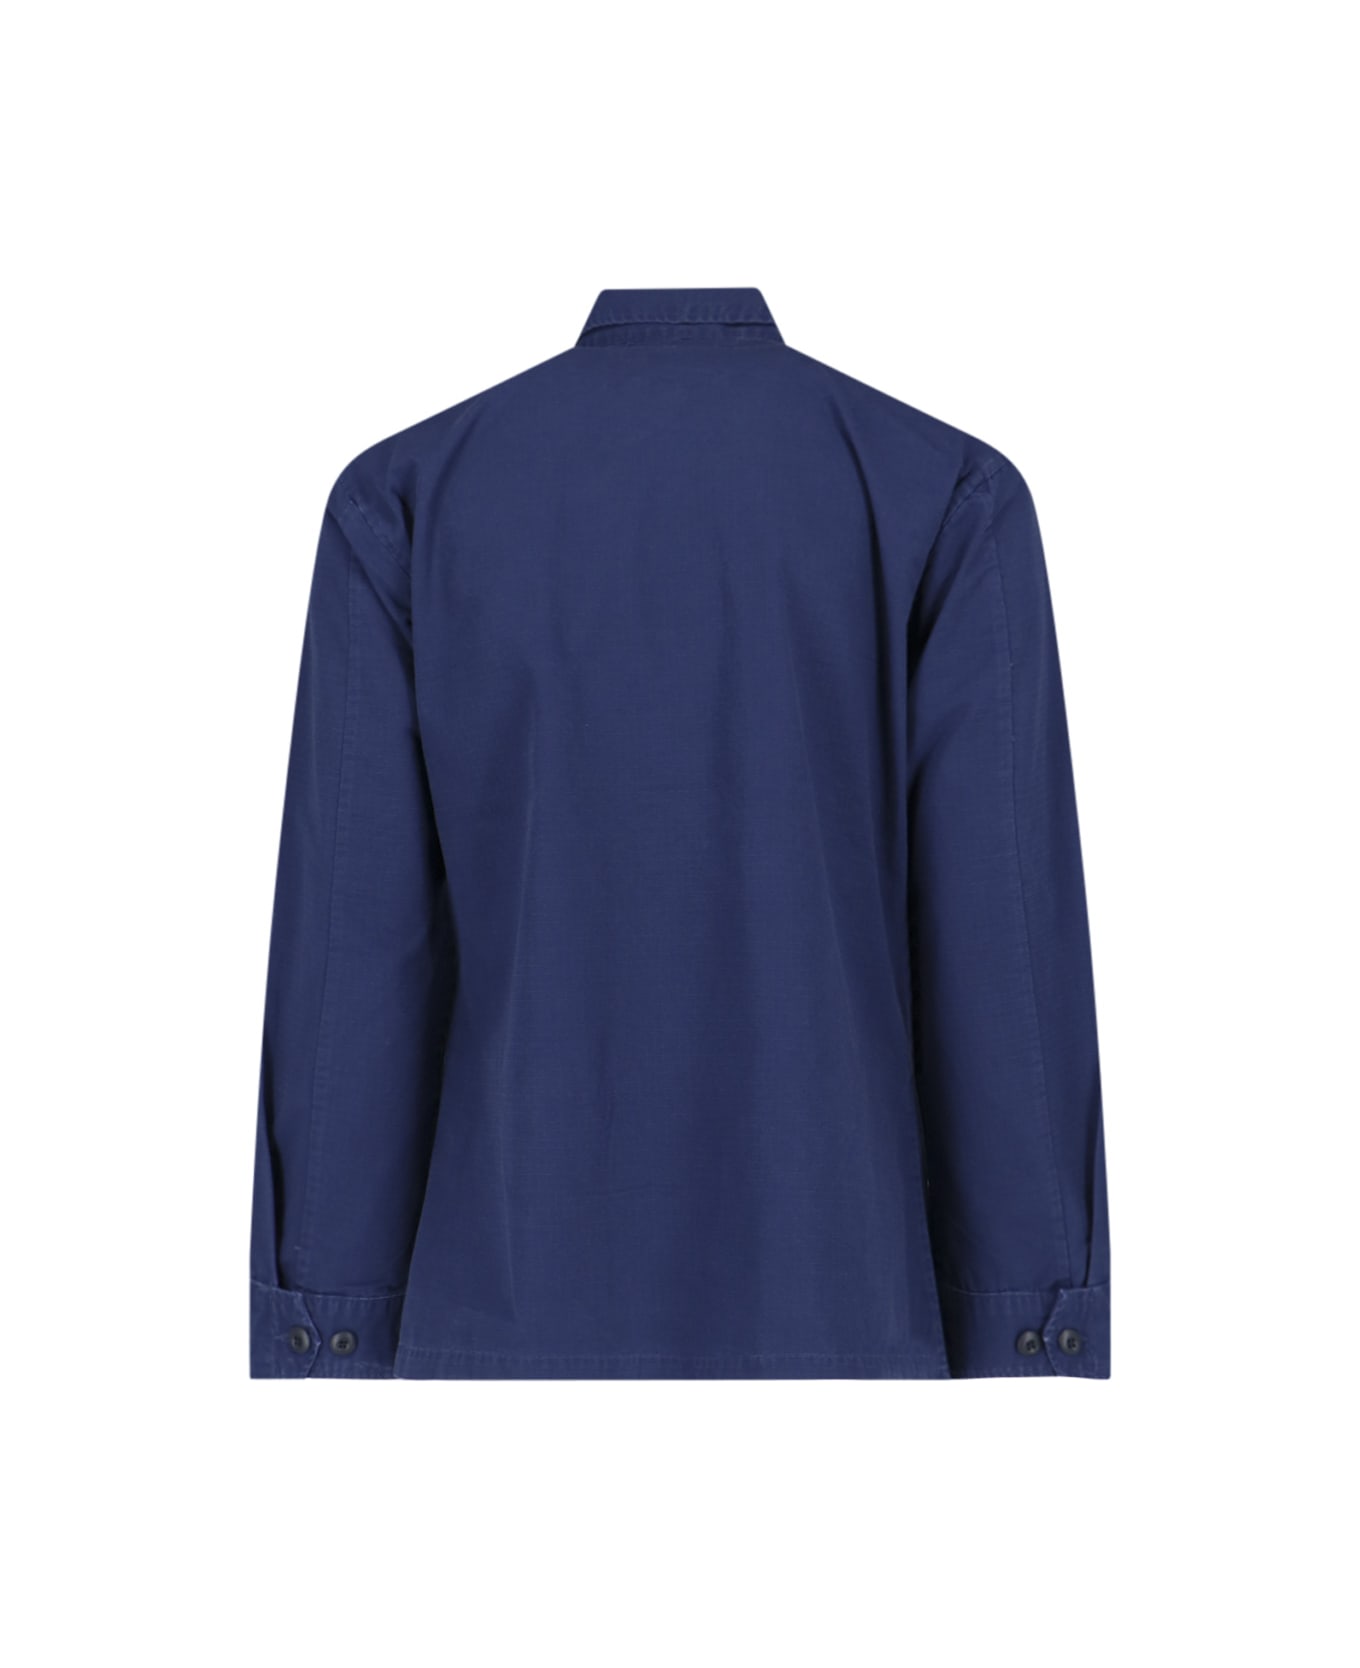 Polo Ralph Lauren Shirt Jacket - Blue